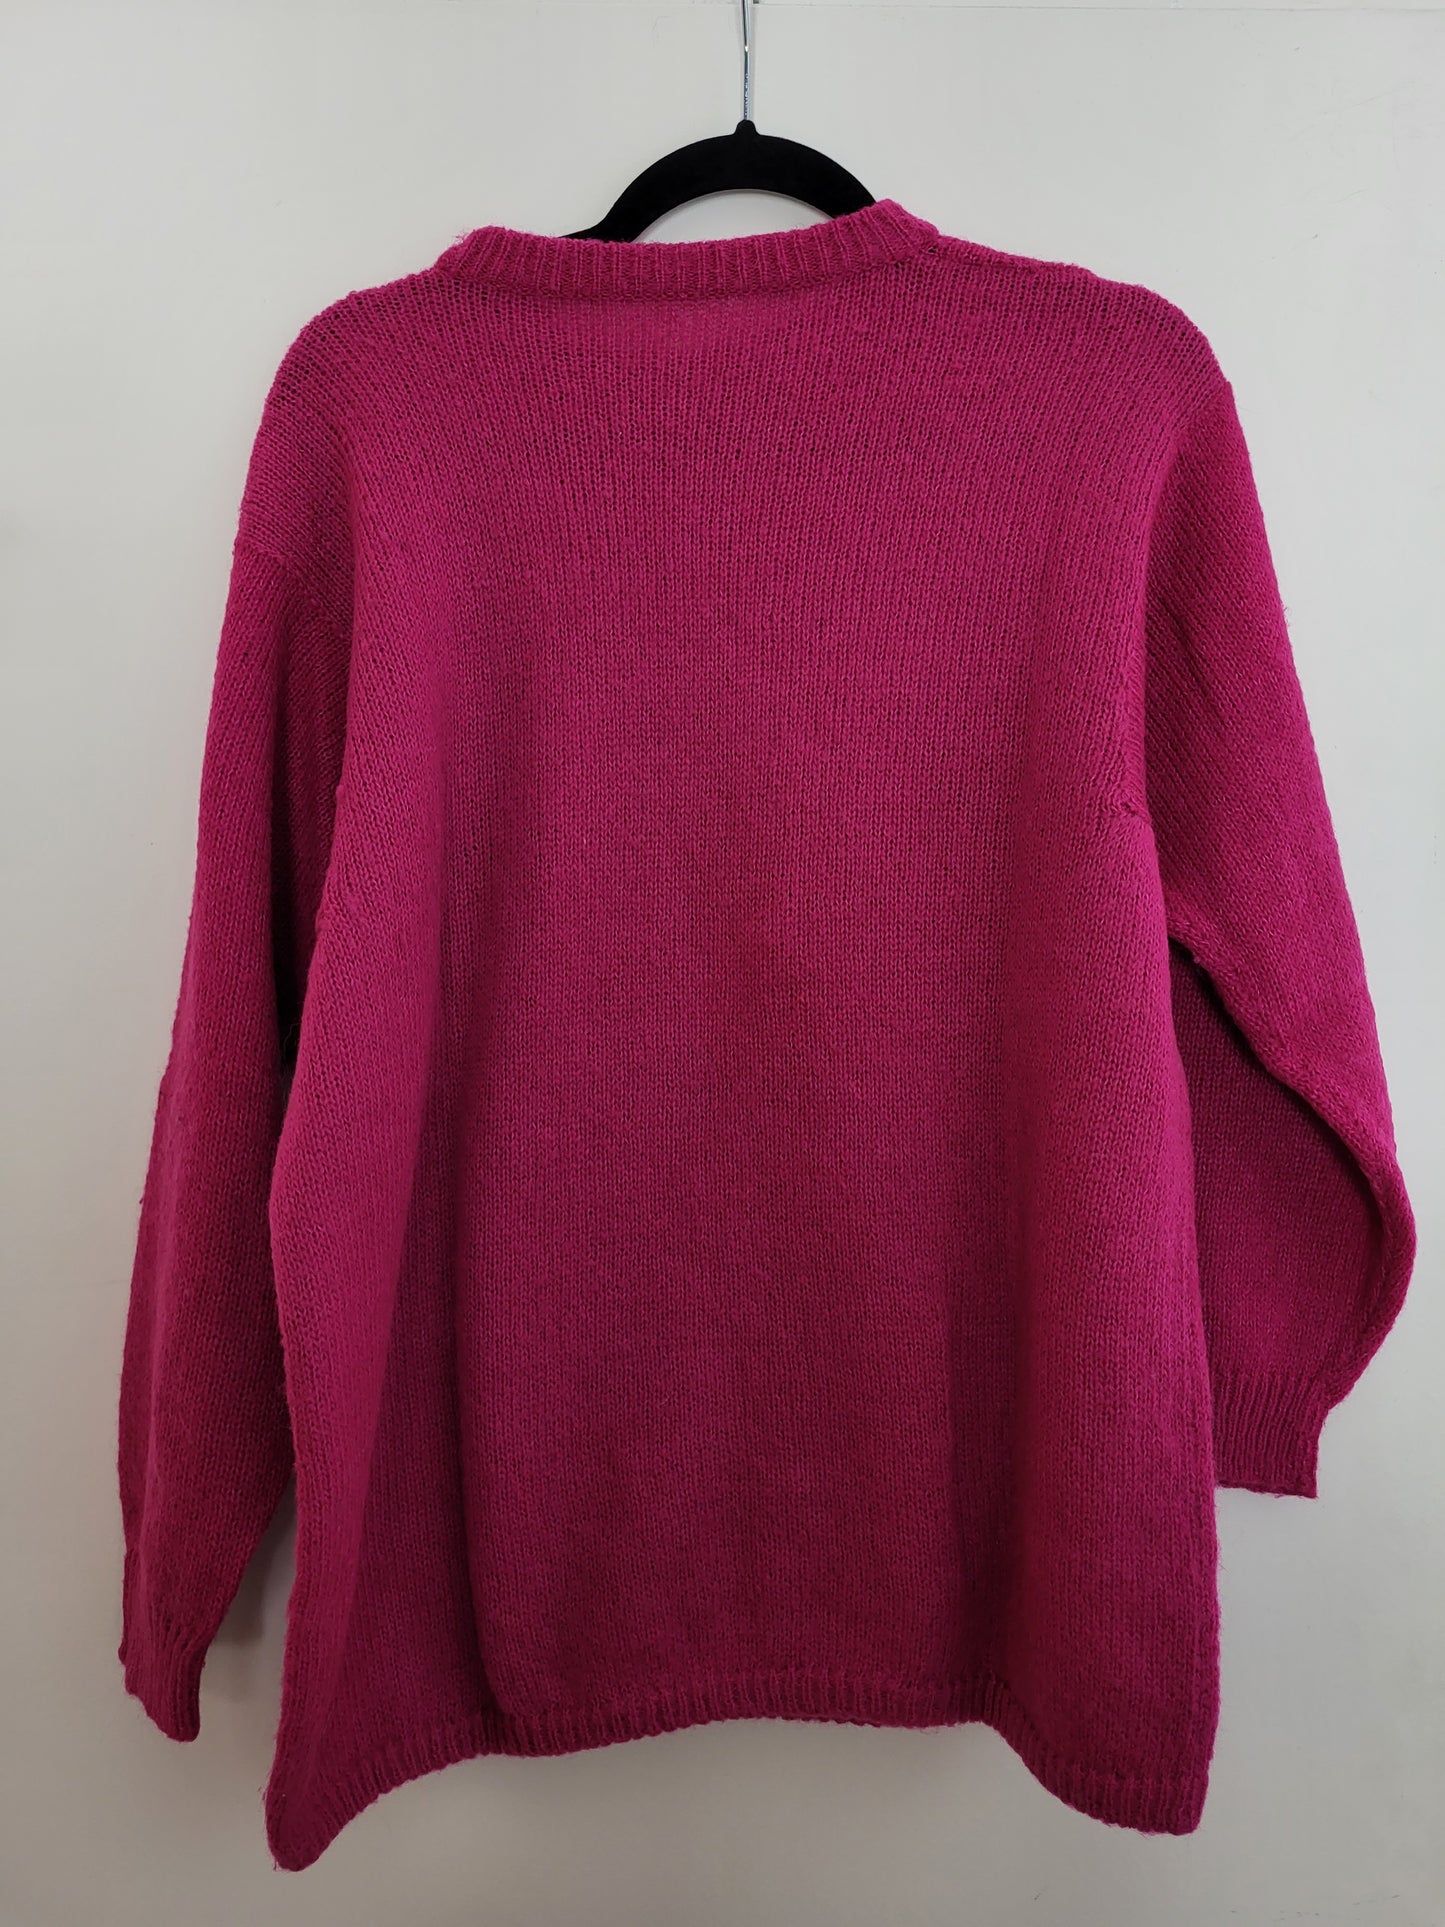 Vintage - Pullover - Muster - Vintage Wolle - Bunt - Damen - L